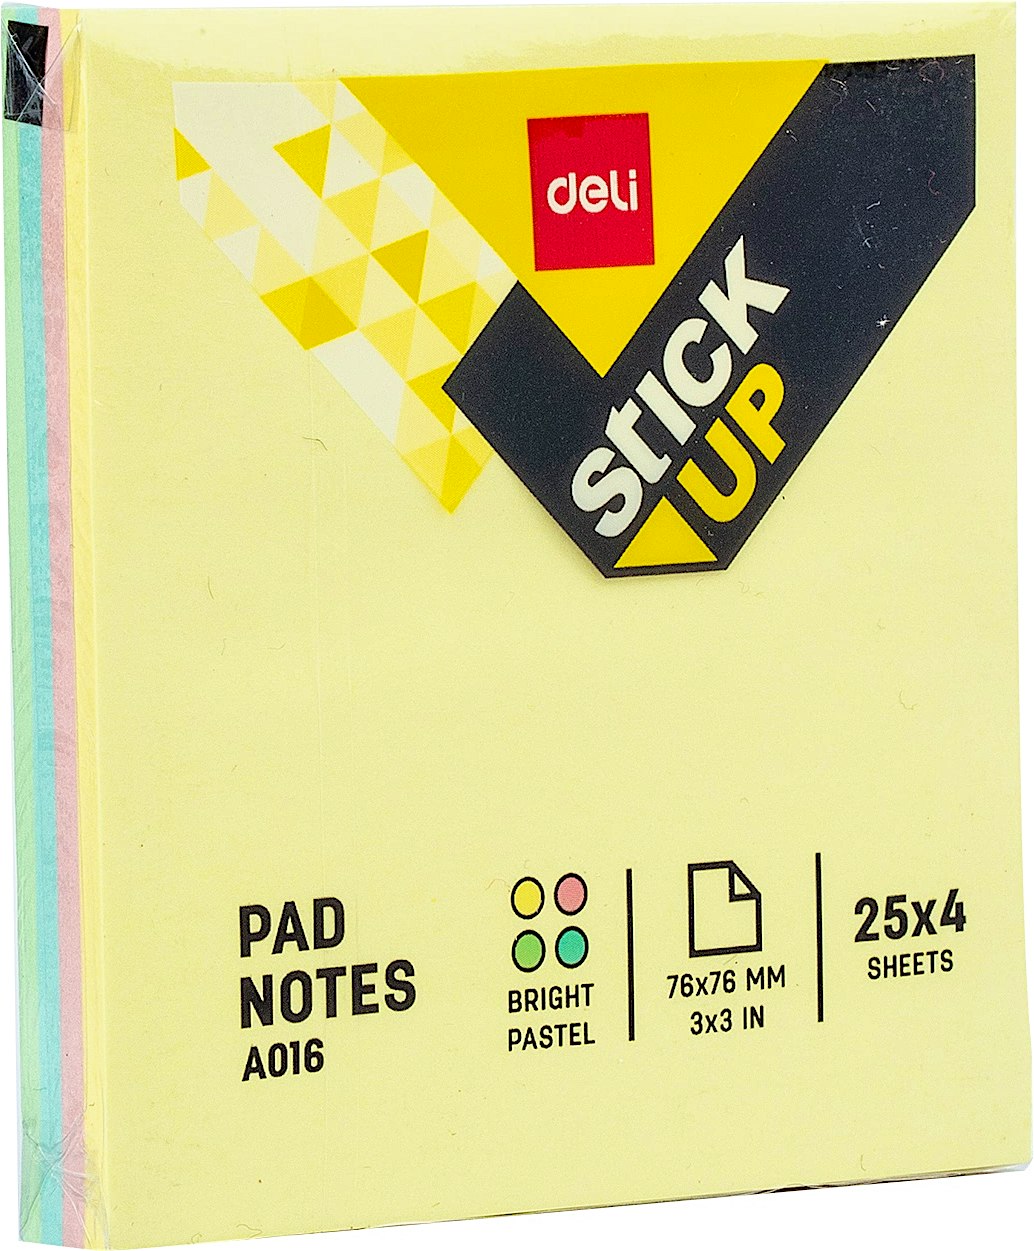 Deli Pad Notes 25x4 Sheets